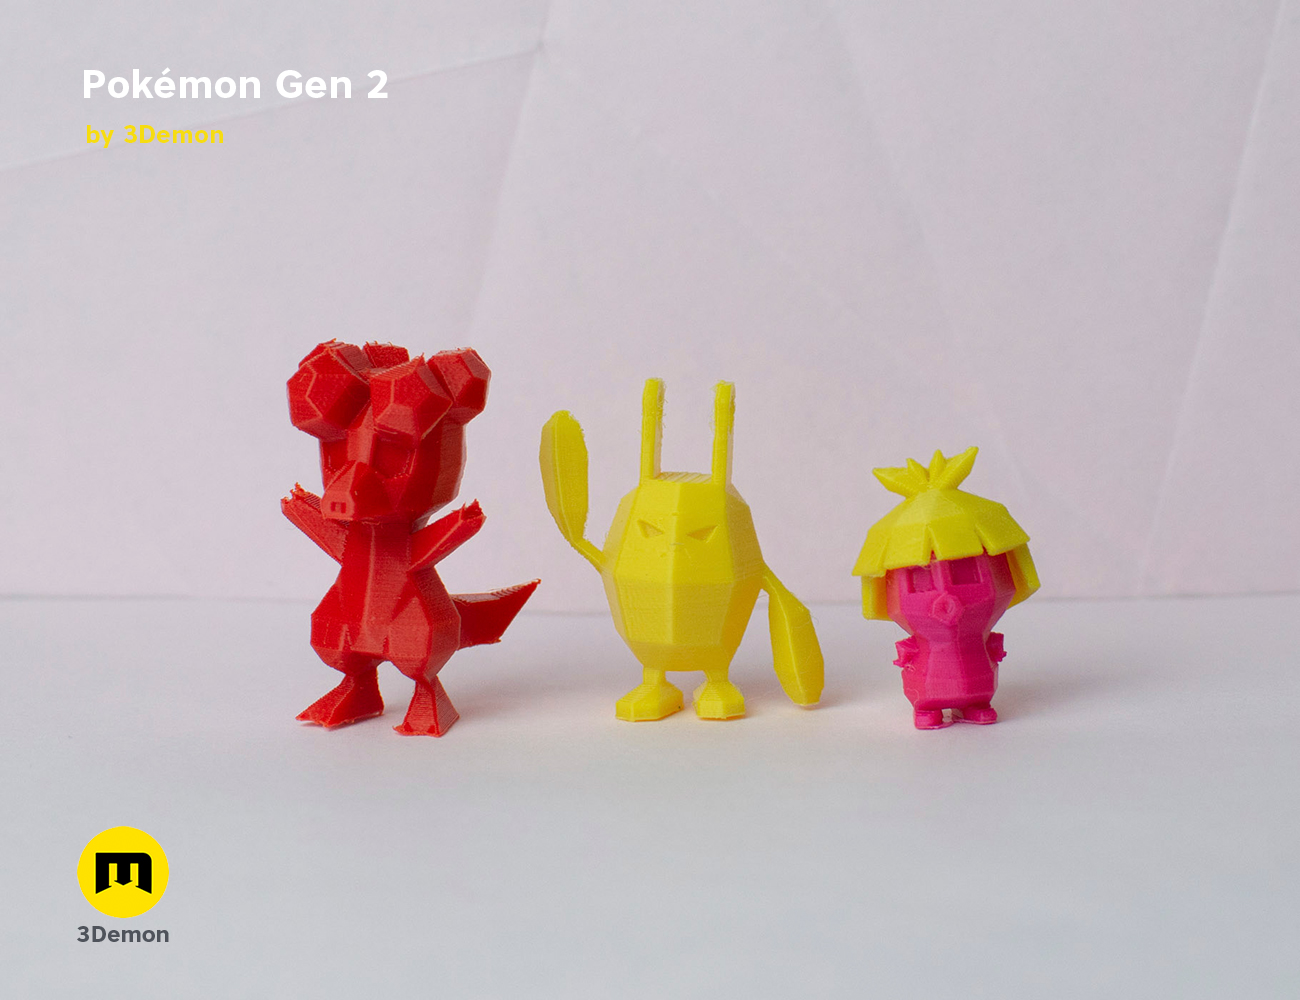 HO-OH LEGENDARY POKEMON 3D model 3D printable